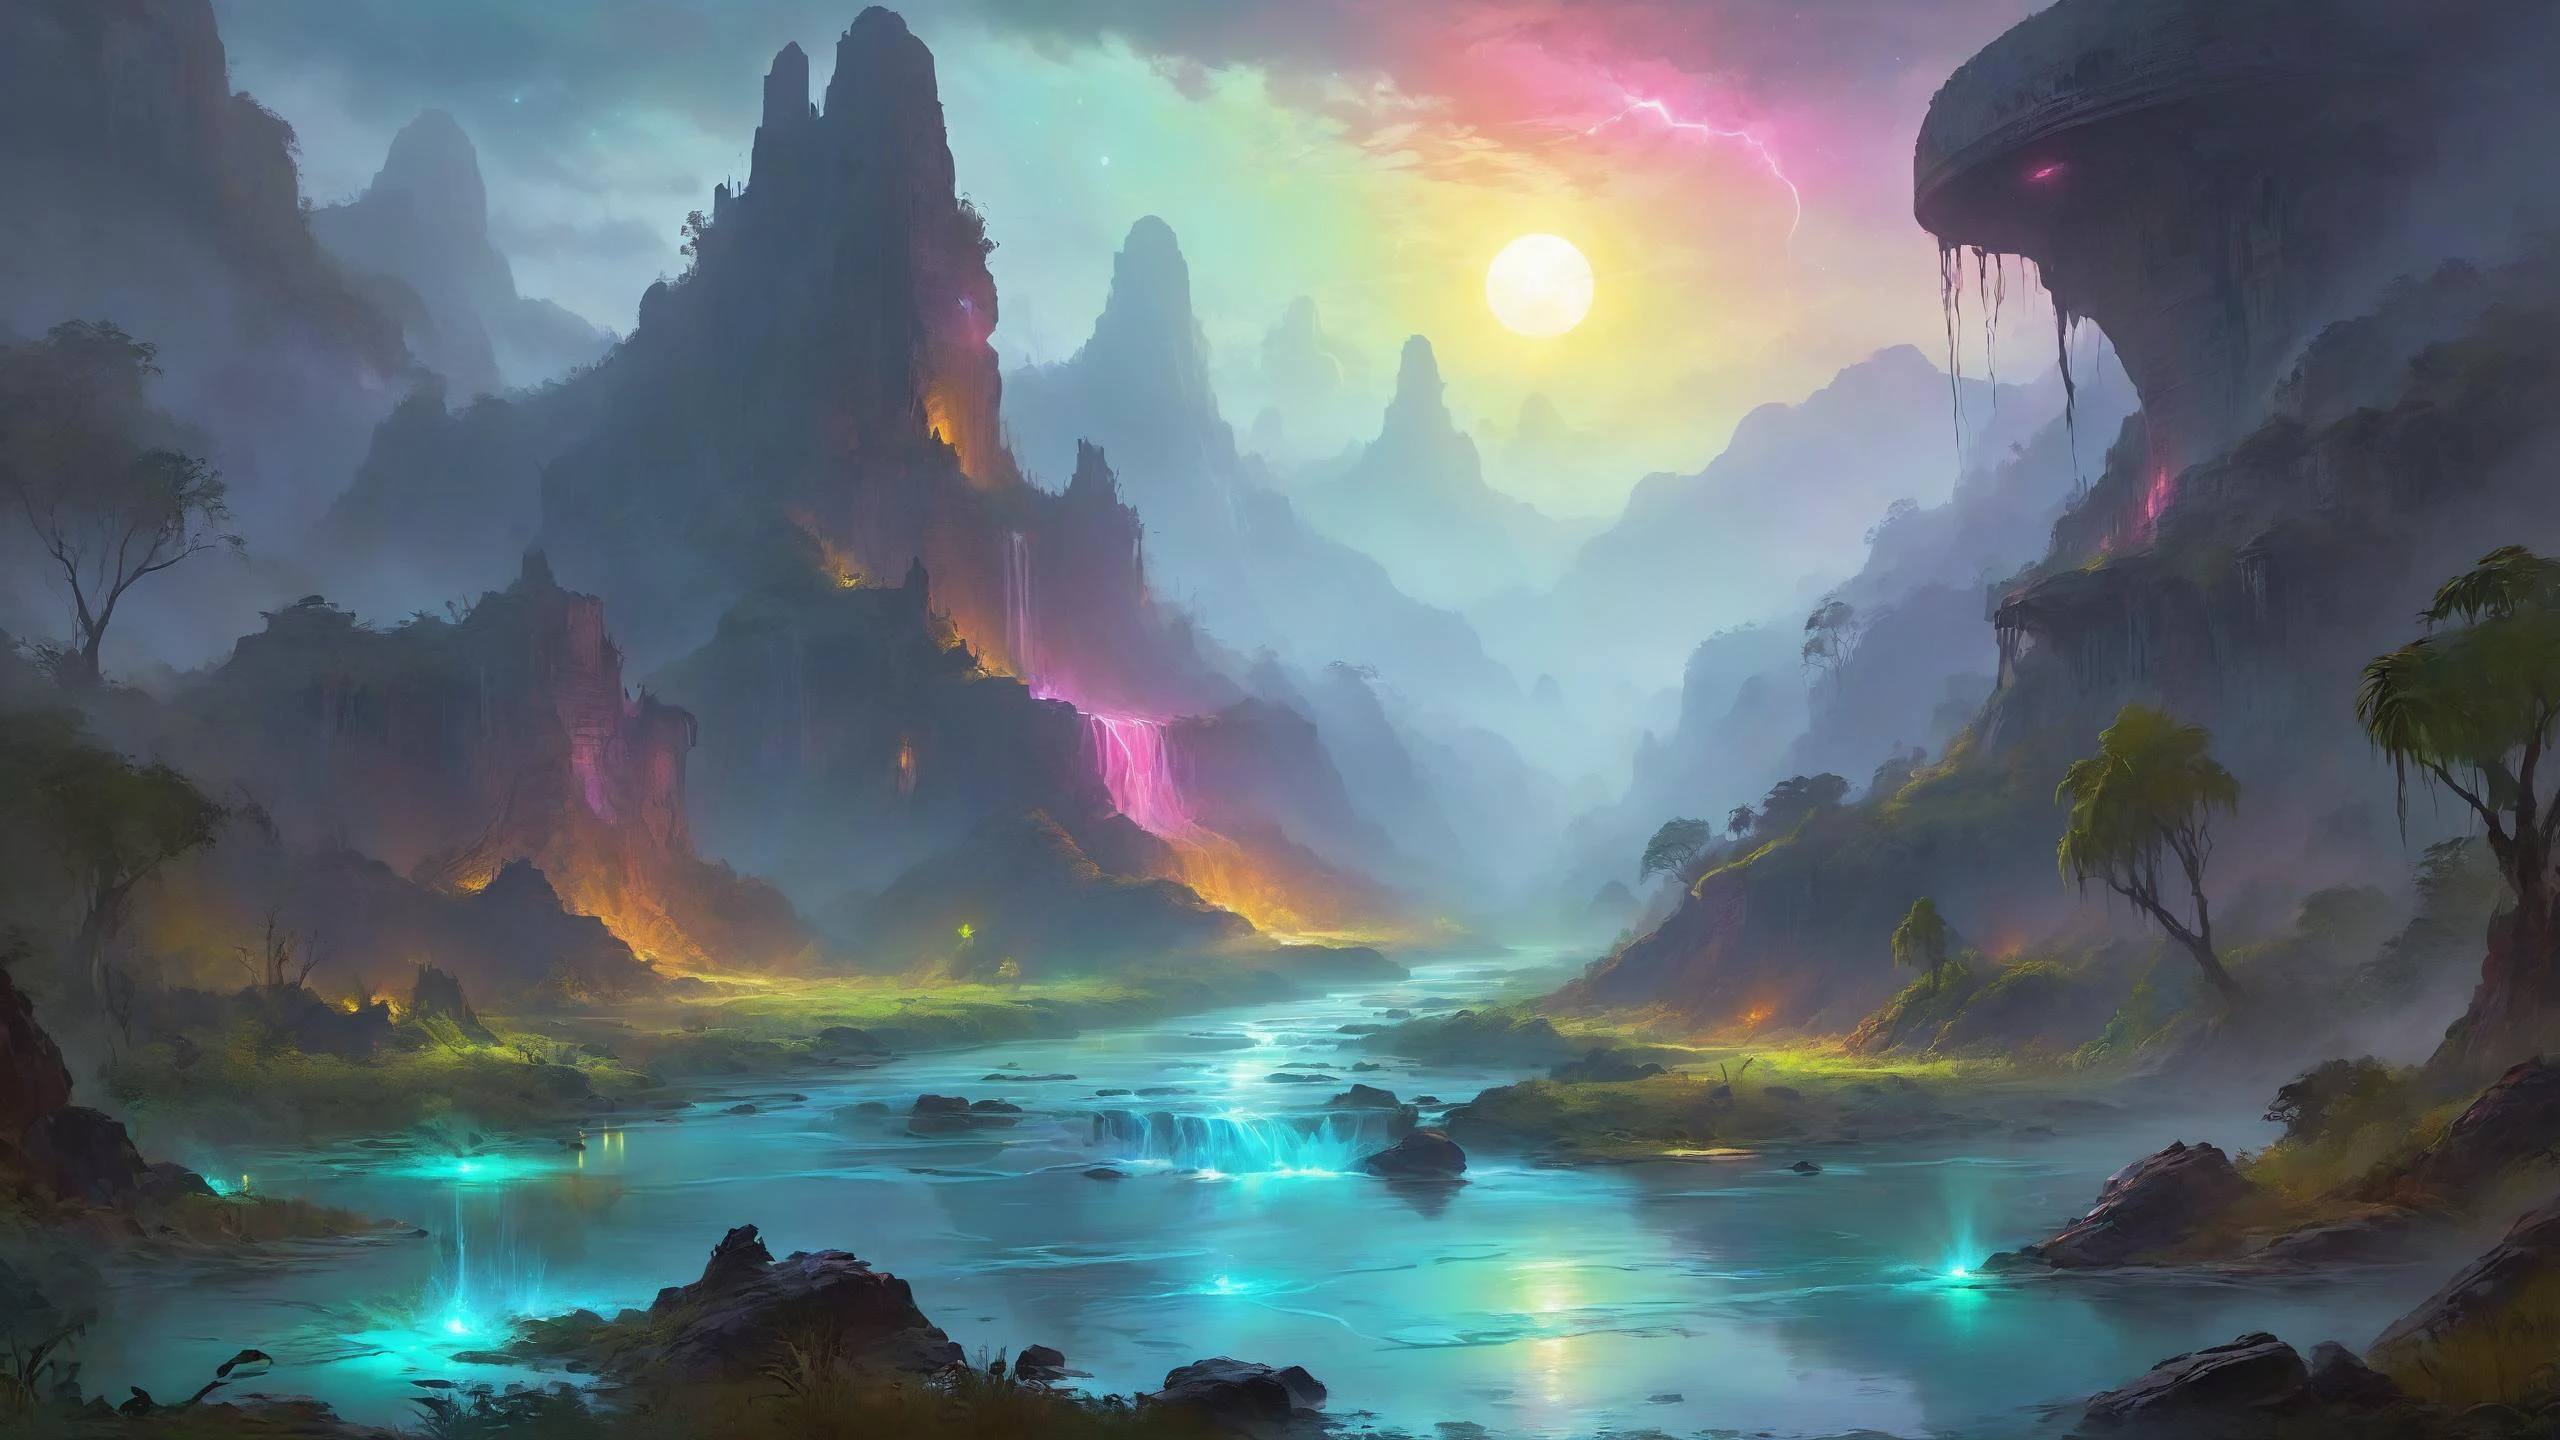 Die Ruinen einer außerirdischen Zivilisation, Im Hintergrund schlängeln sich biolumineszierende Flüsse durch üppige Täler, Glühwelle, digitale Zeichnung, gesättigte Farben